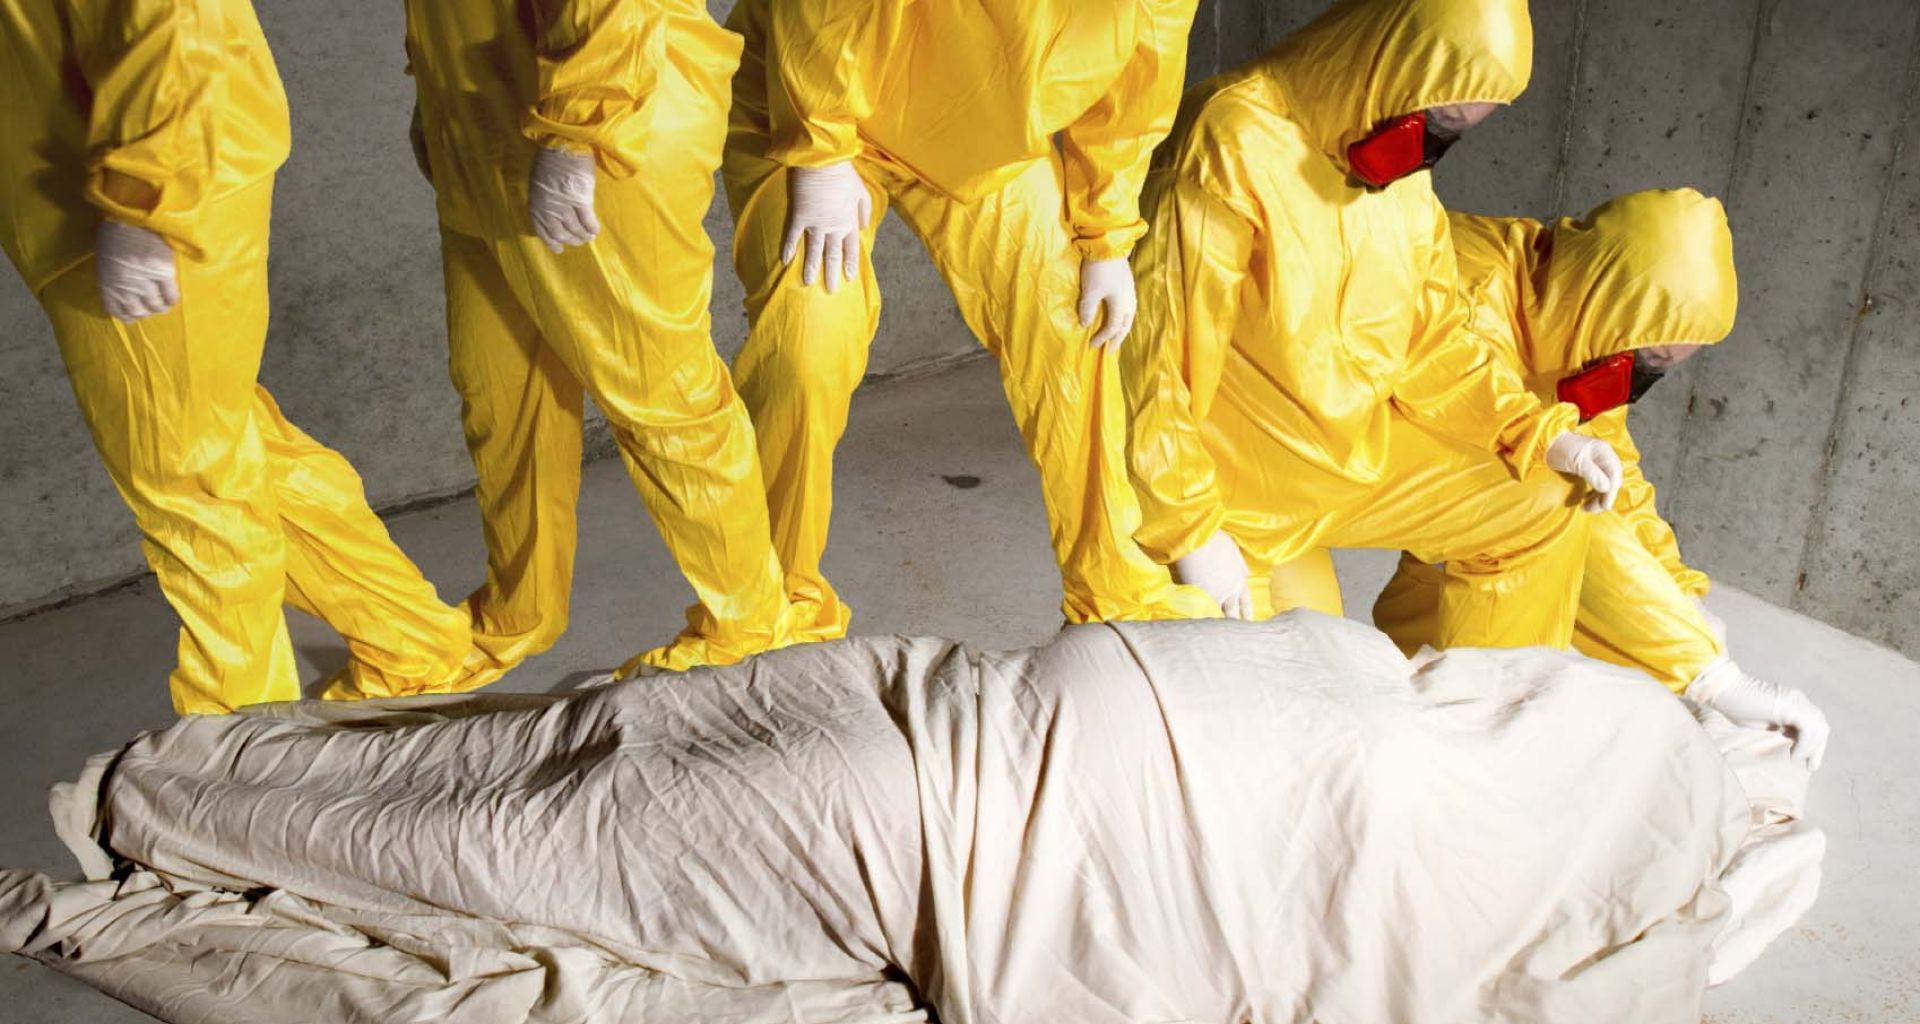 كيف يتم دفن المتوفي بمرض فيروس الإيبولا حسب توصيات منظمة الصحة العالمية